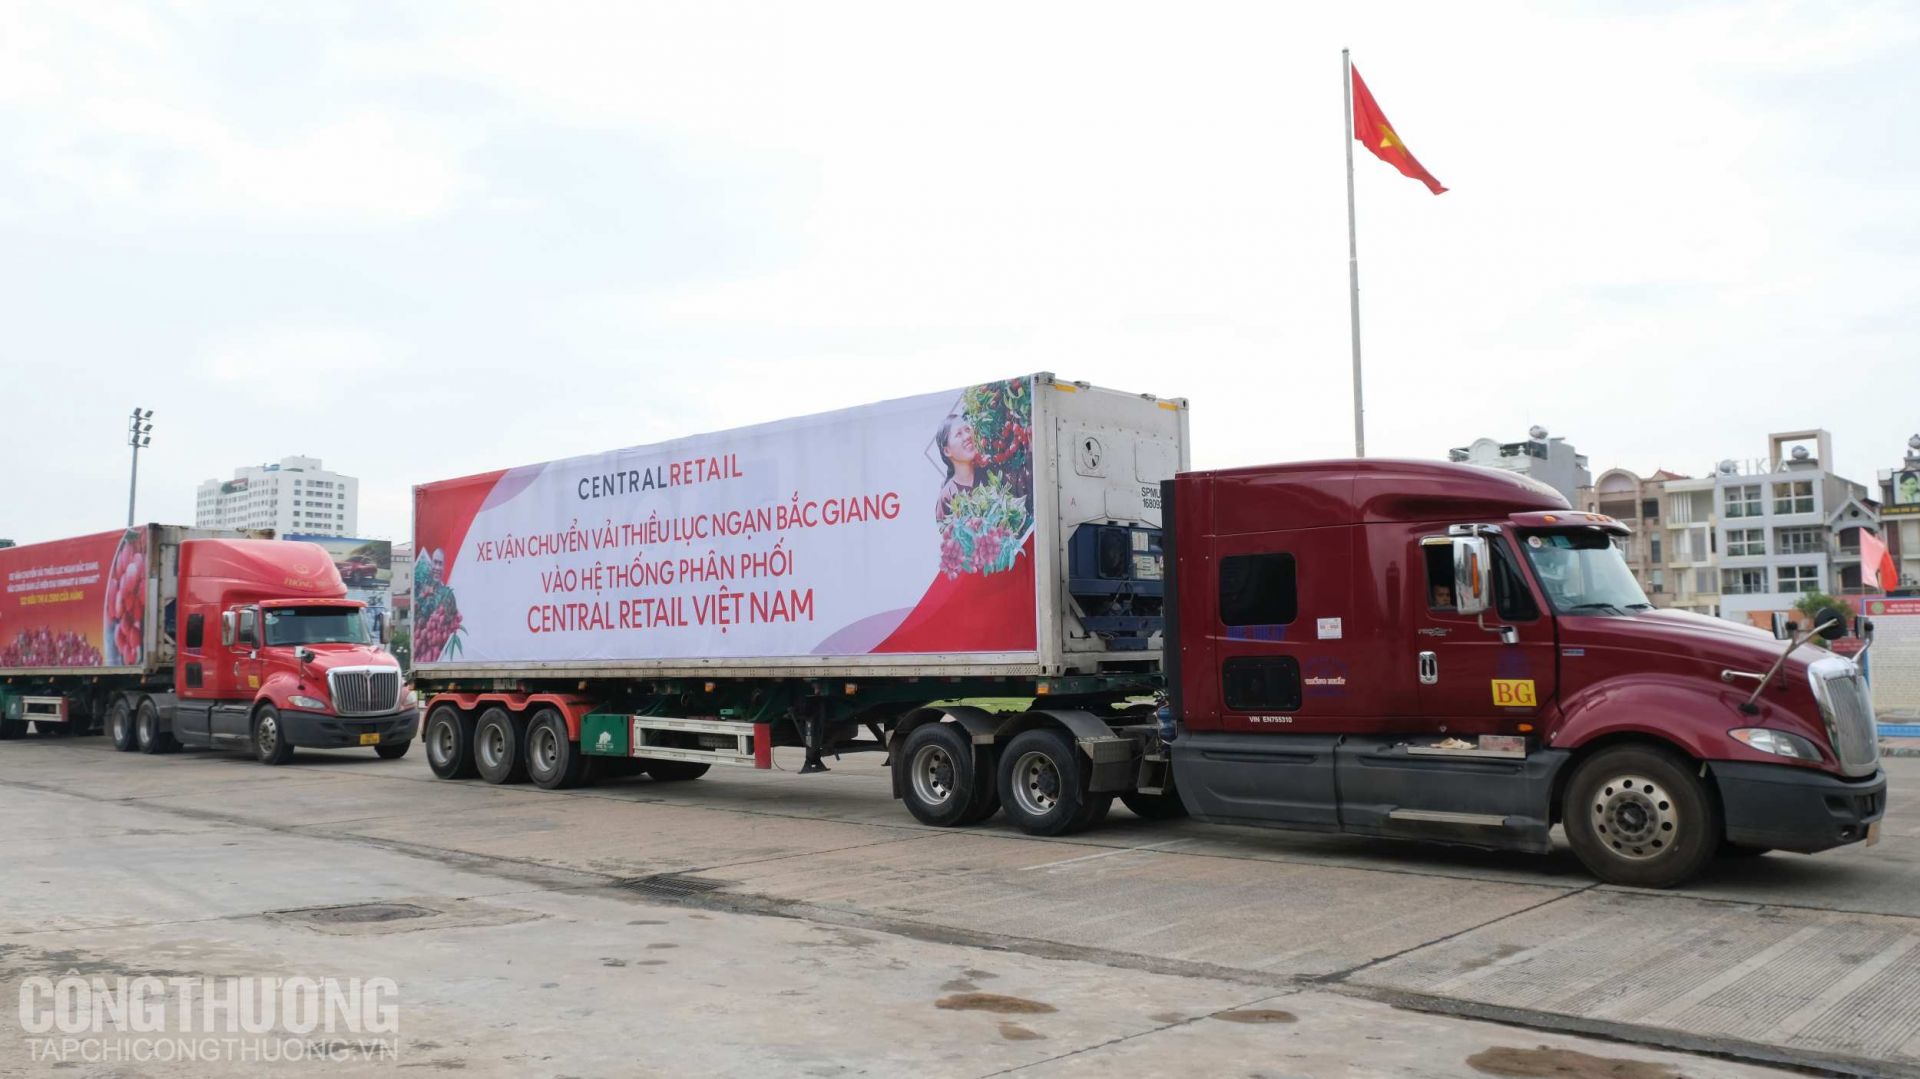 Các xe container vận chuyển vải thiều Lục Ngạn - Bắc Giang vào hệ thống phân phối của Central Retail